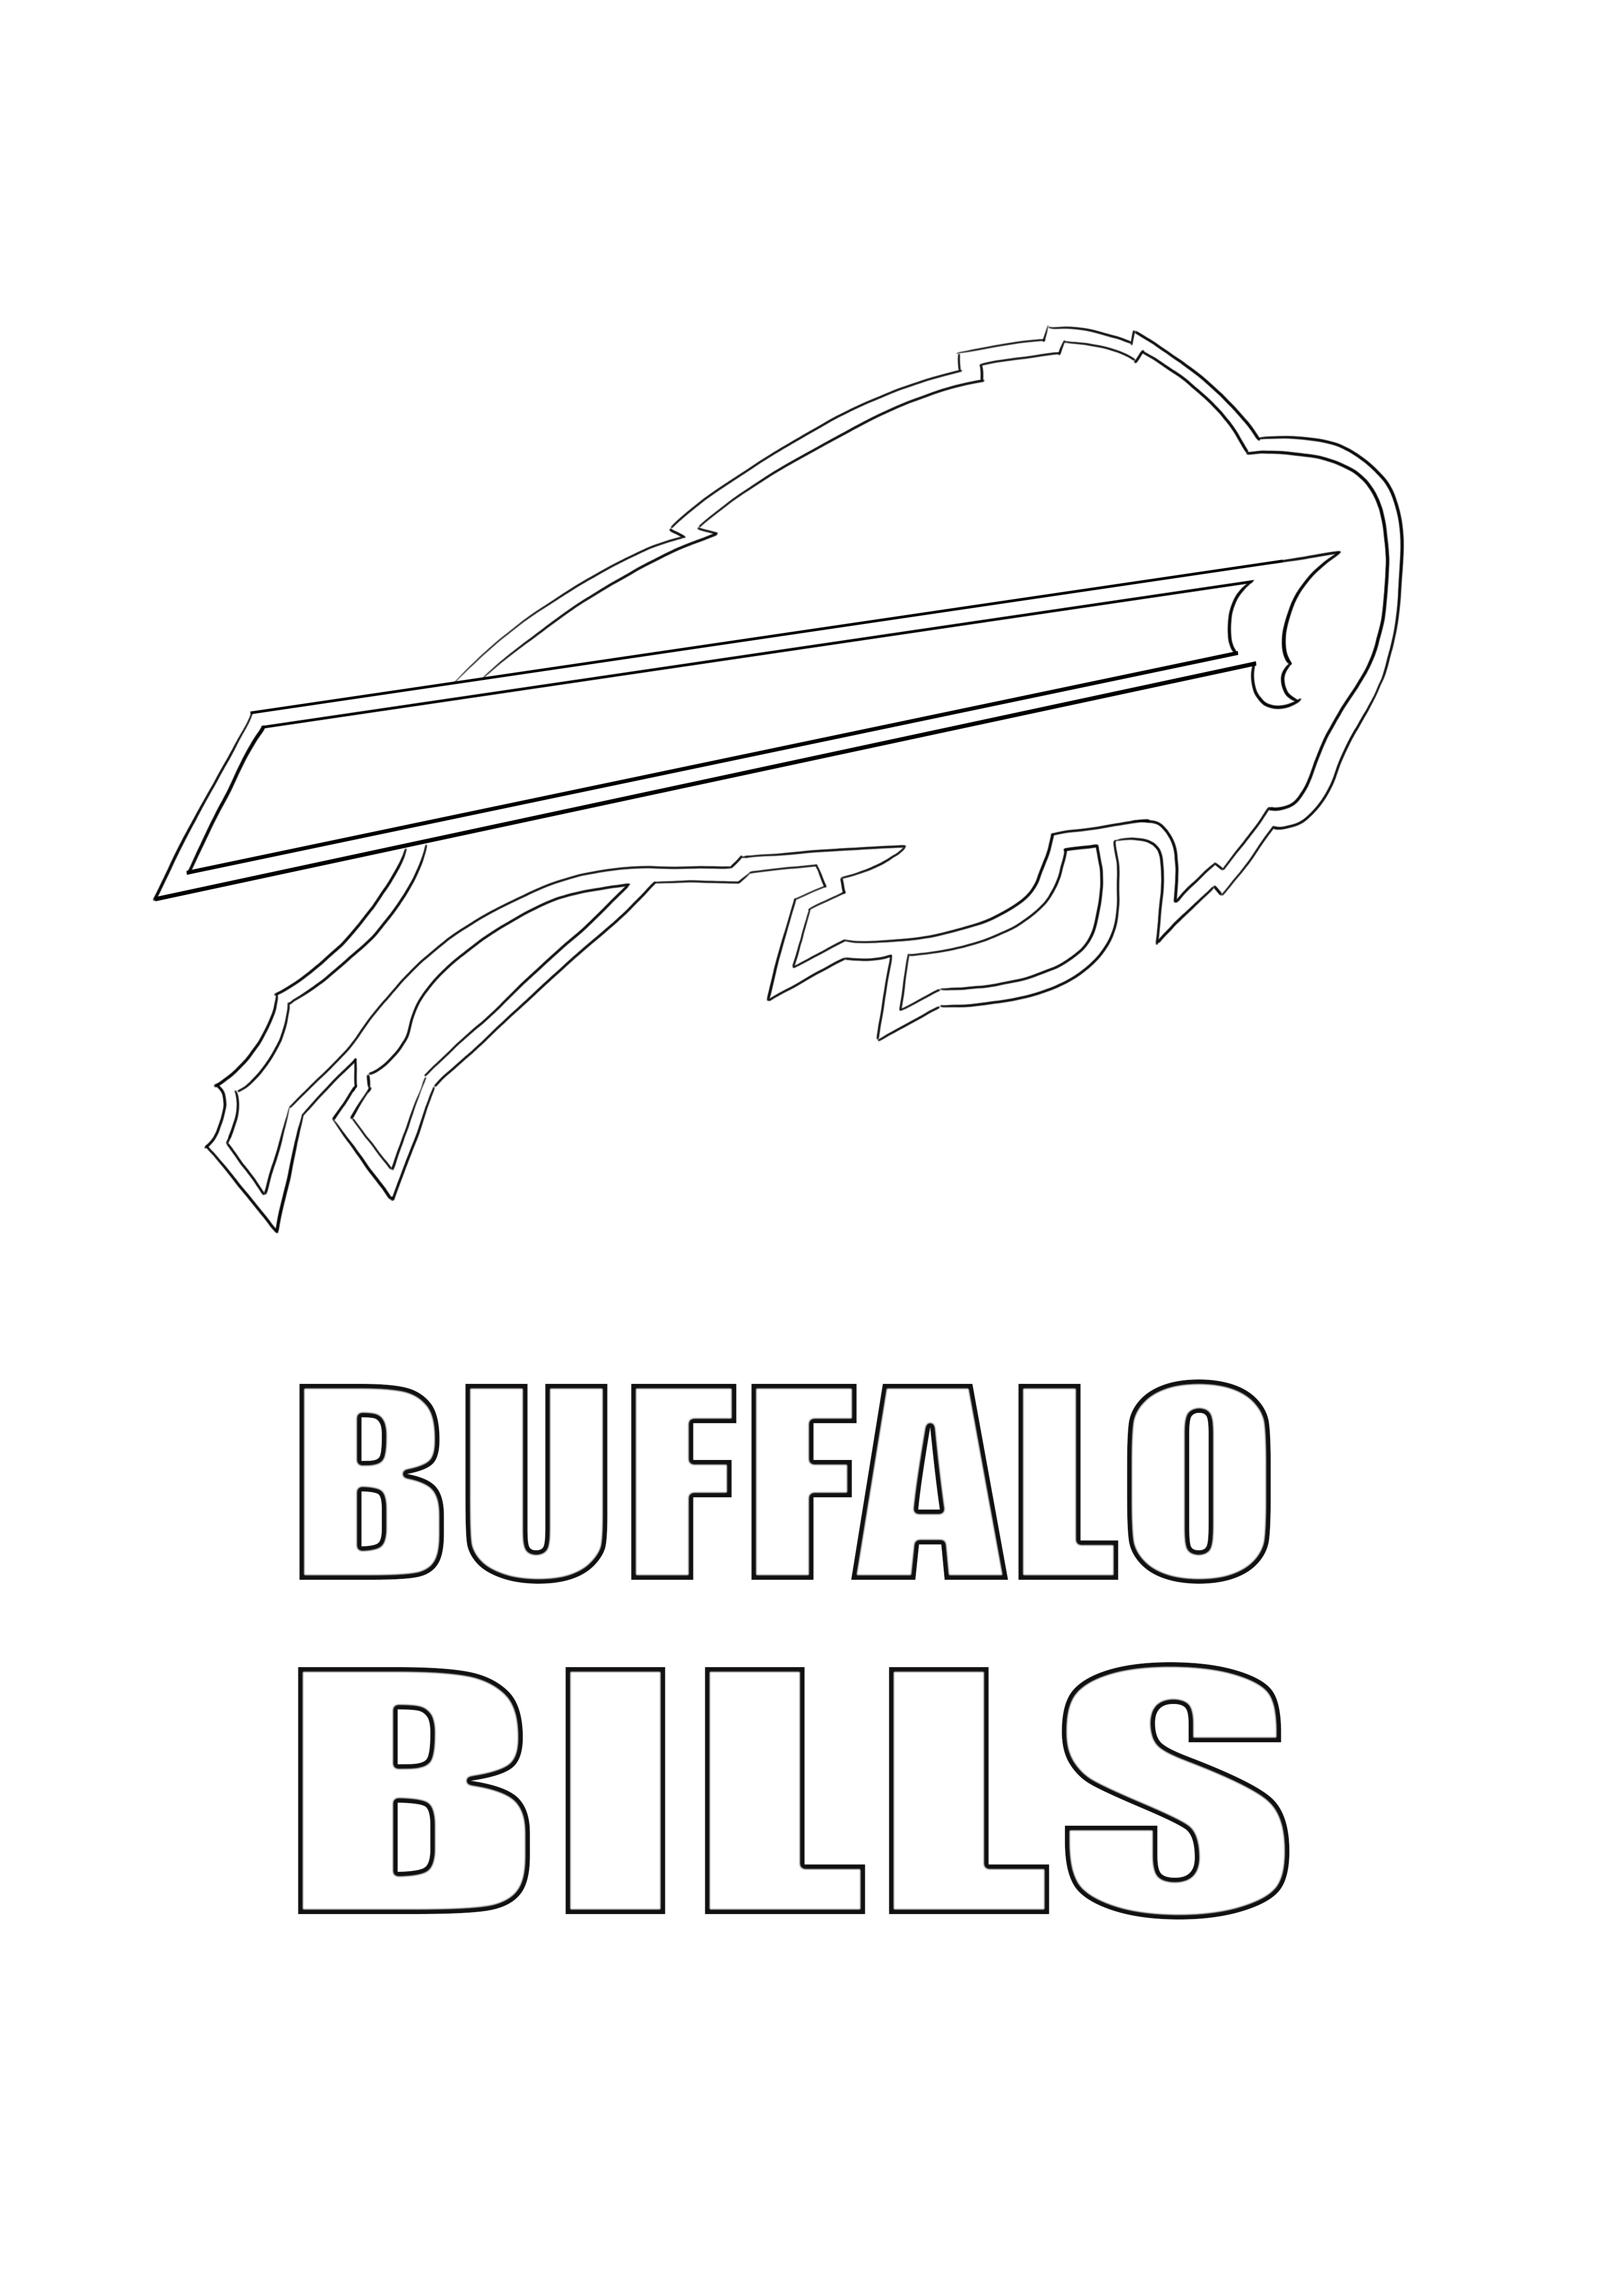 Immagine da colorare di Buffalo Bills logo per la stampa gratuita